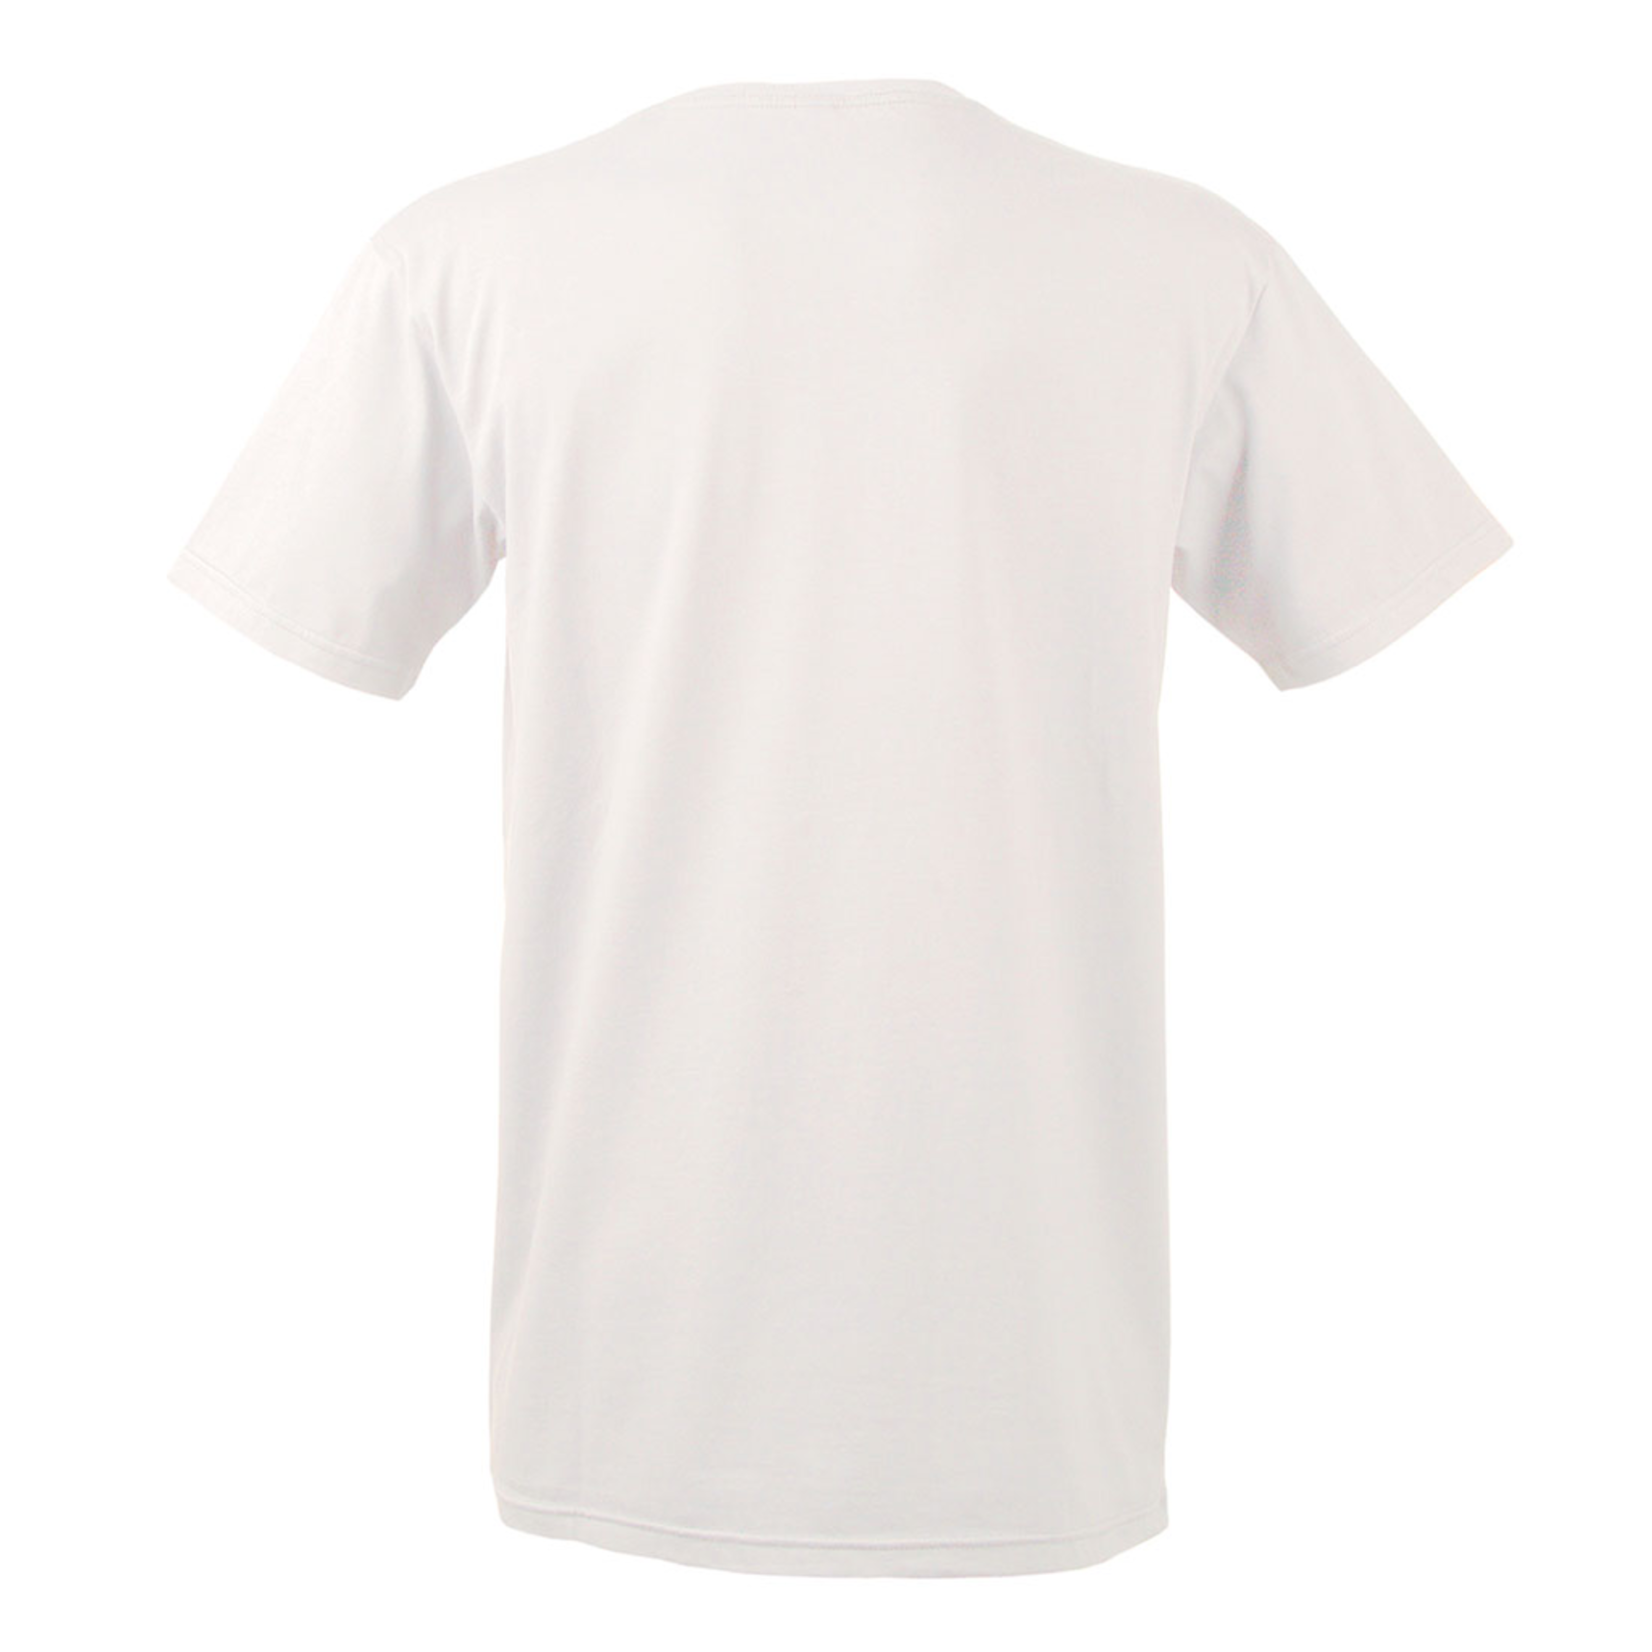 Clothing  'Crayons' Tshirt - Unisex - White